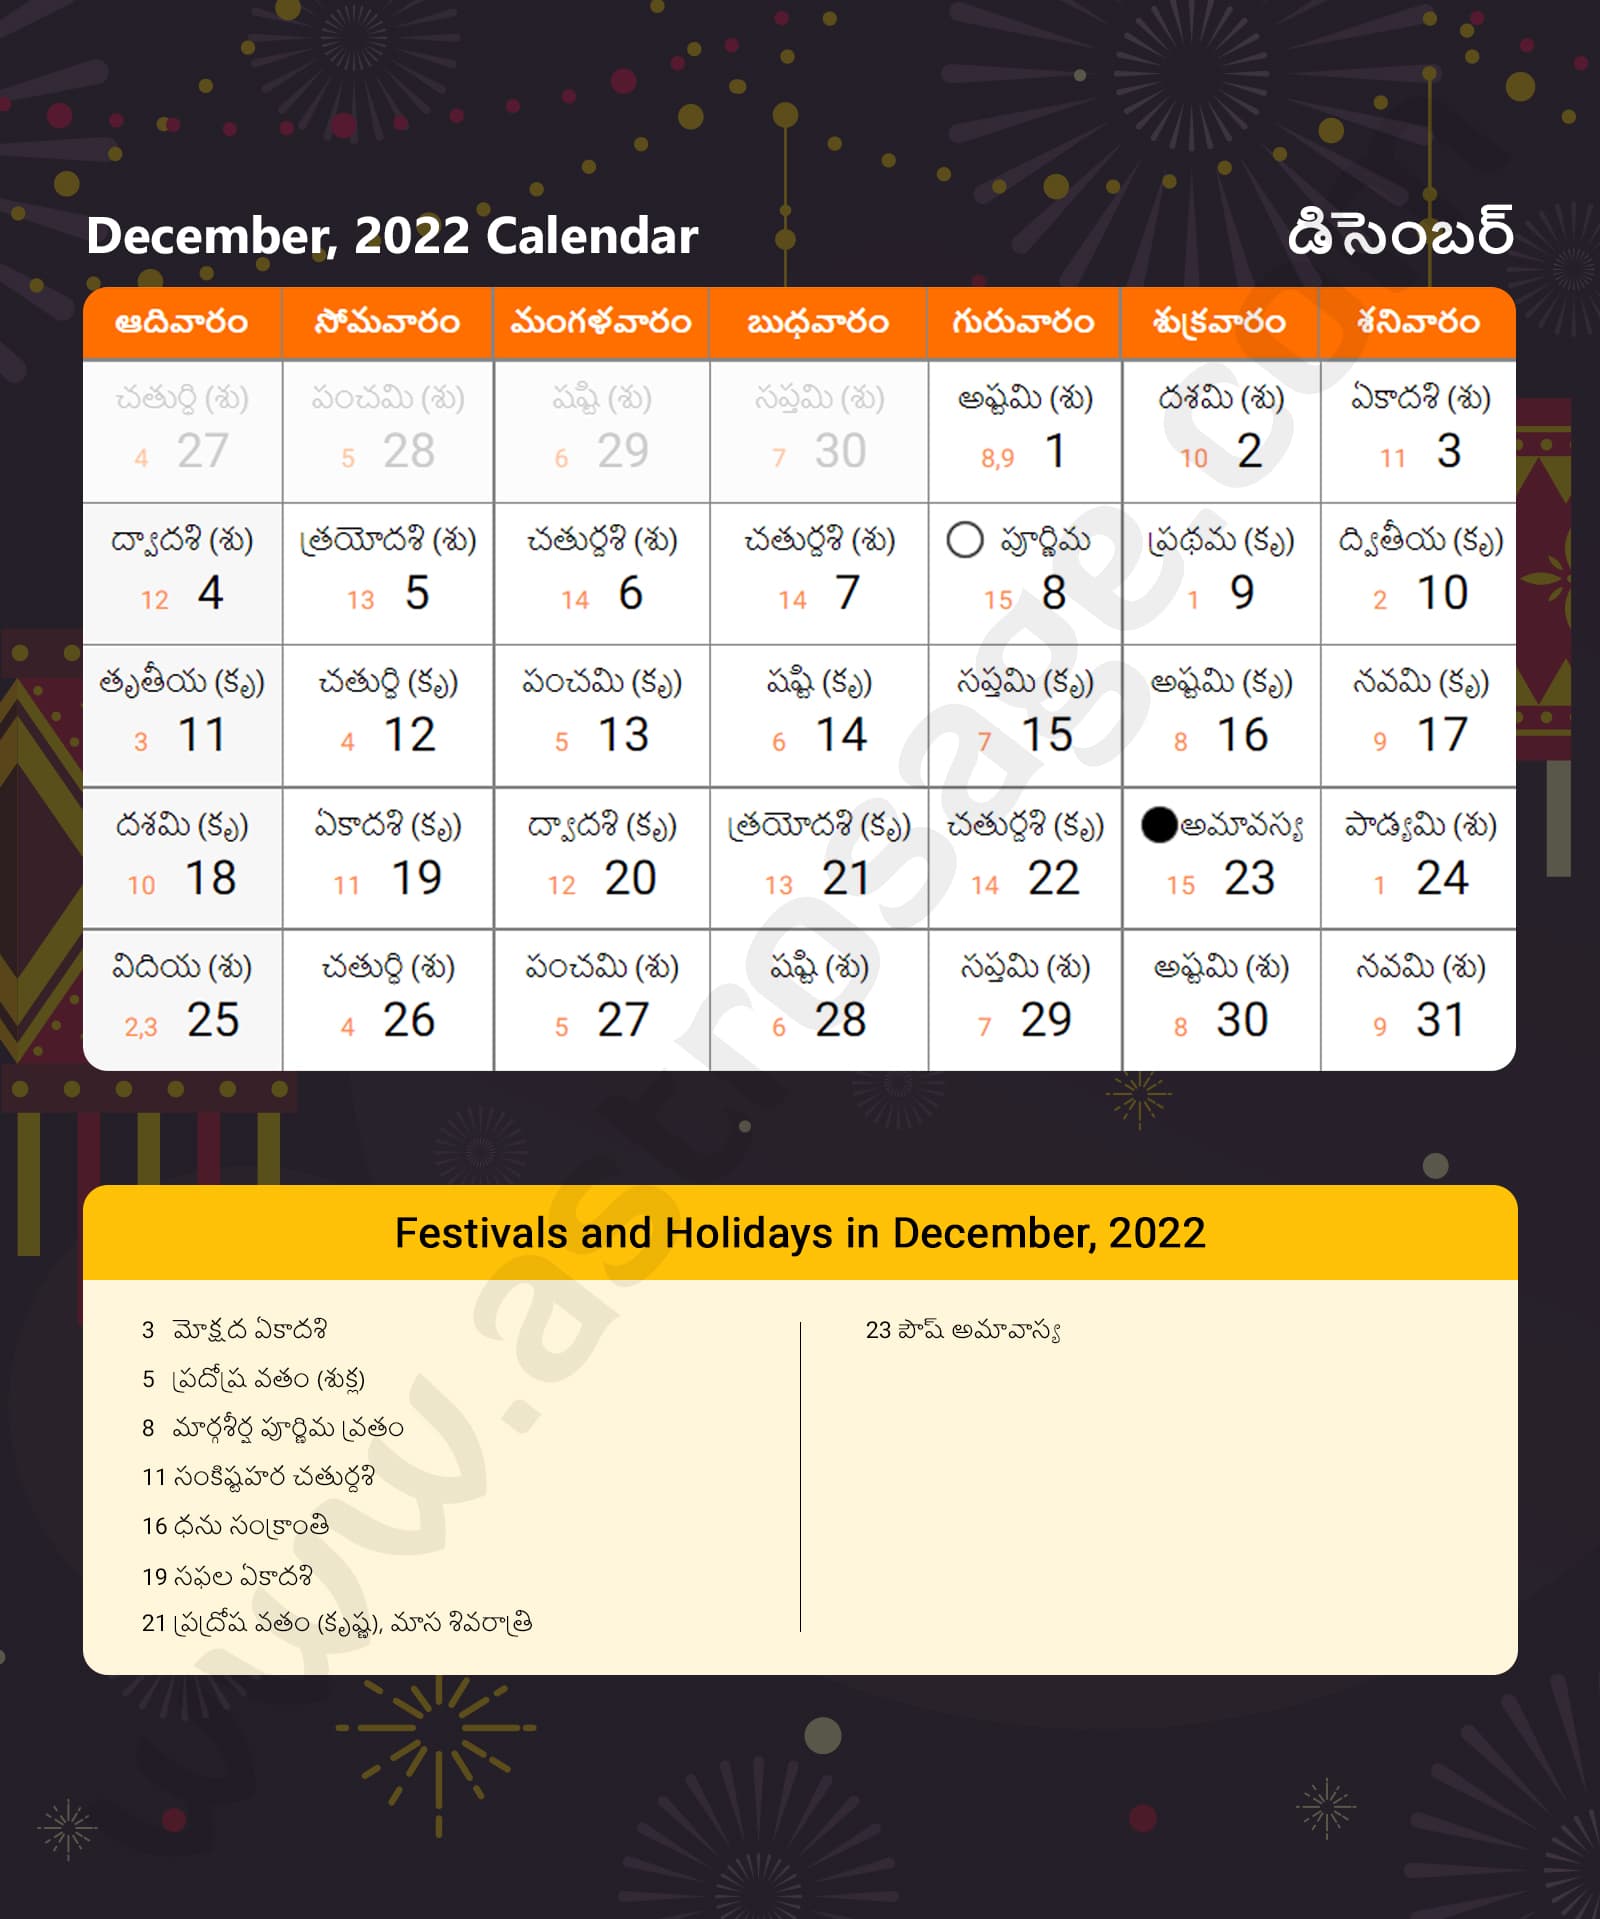 Telugu Calendar 2022 December